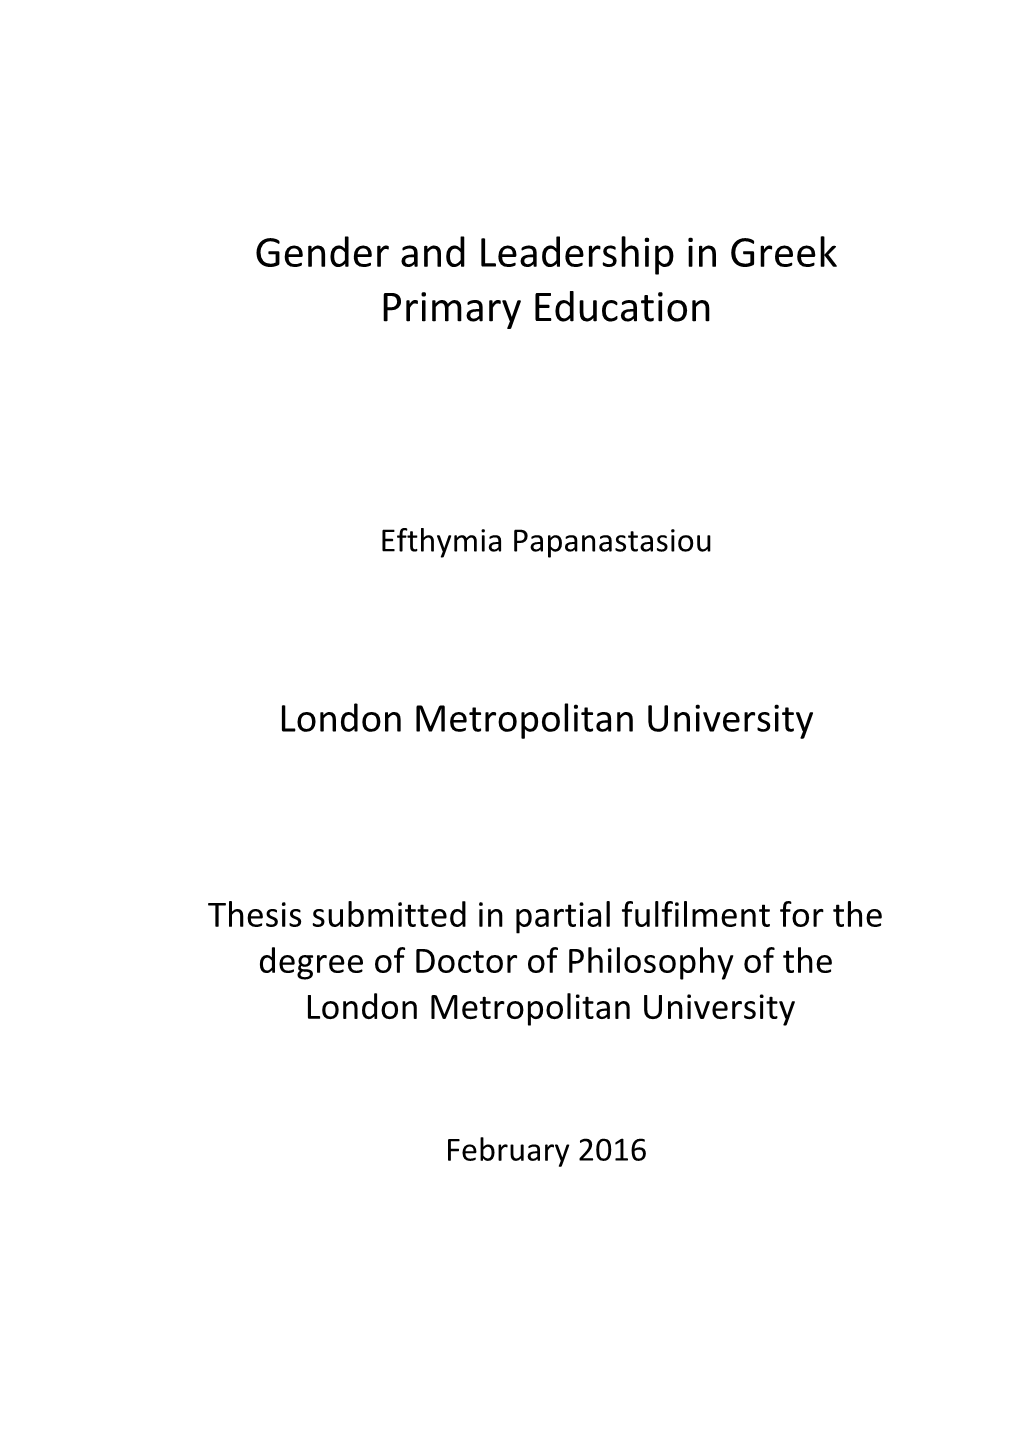 Gender and Leadership in Greek Primary Education